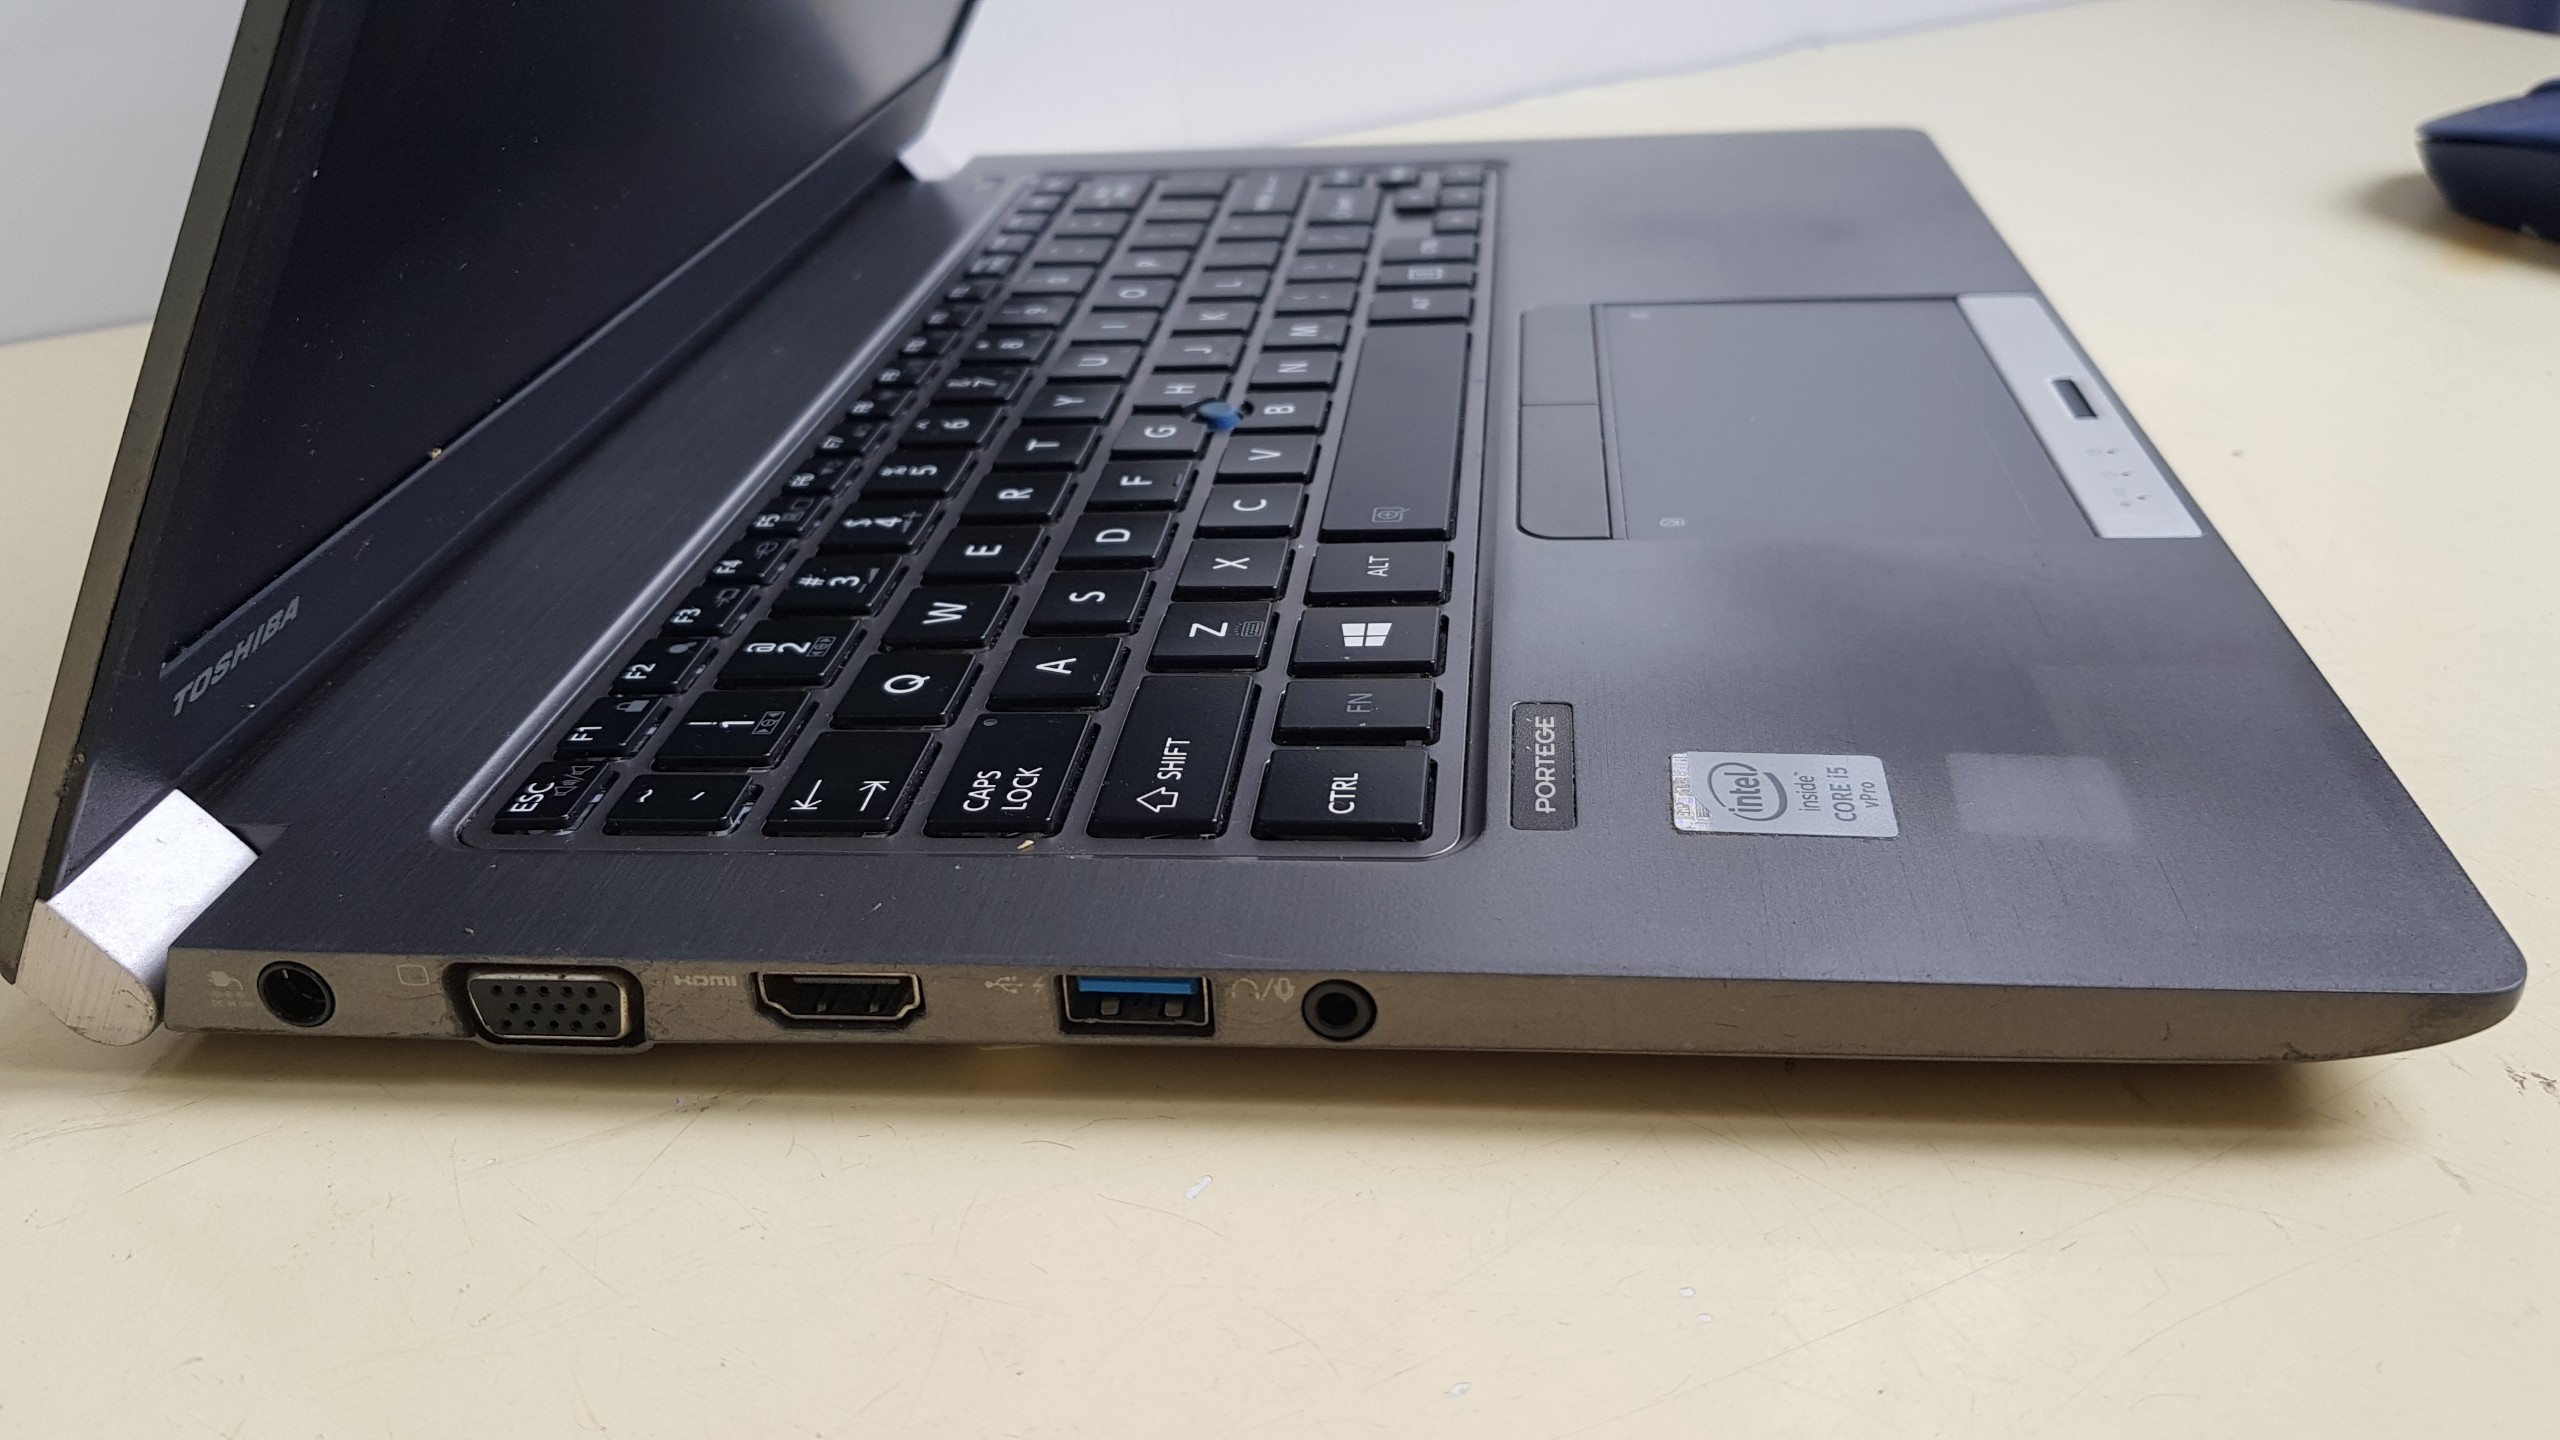 Laptop Toshiba Portege Z30-B là sự lựa chọn tuyệt vời cho những ai đang tìm kiếm một chiếc laptop mỏng nhẹ và có hiệu suất cao. Với bàn phím đẹp và bền, độ phân giải cao và tính năng bảo mật đỉnh cao, chắc chắn bạn sẽ không phải thất vọng về sản phẩm này. Hãy xem hình ảnh để tìm hiểu thêm về laptop Toshiba Portege Z30-B này!